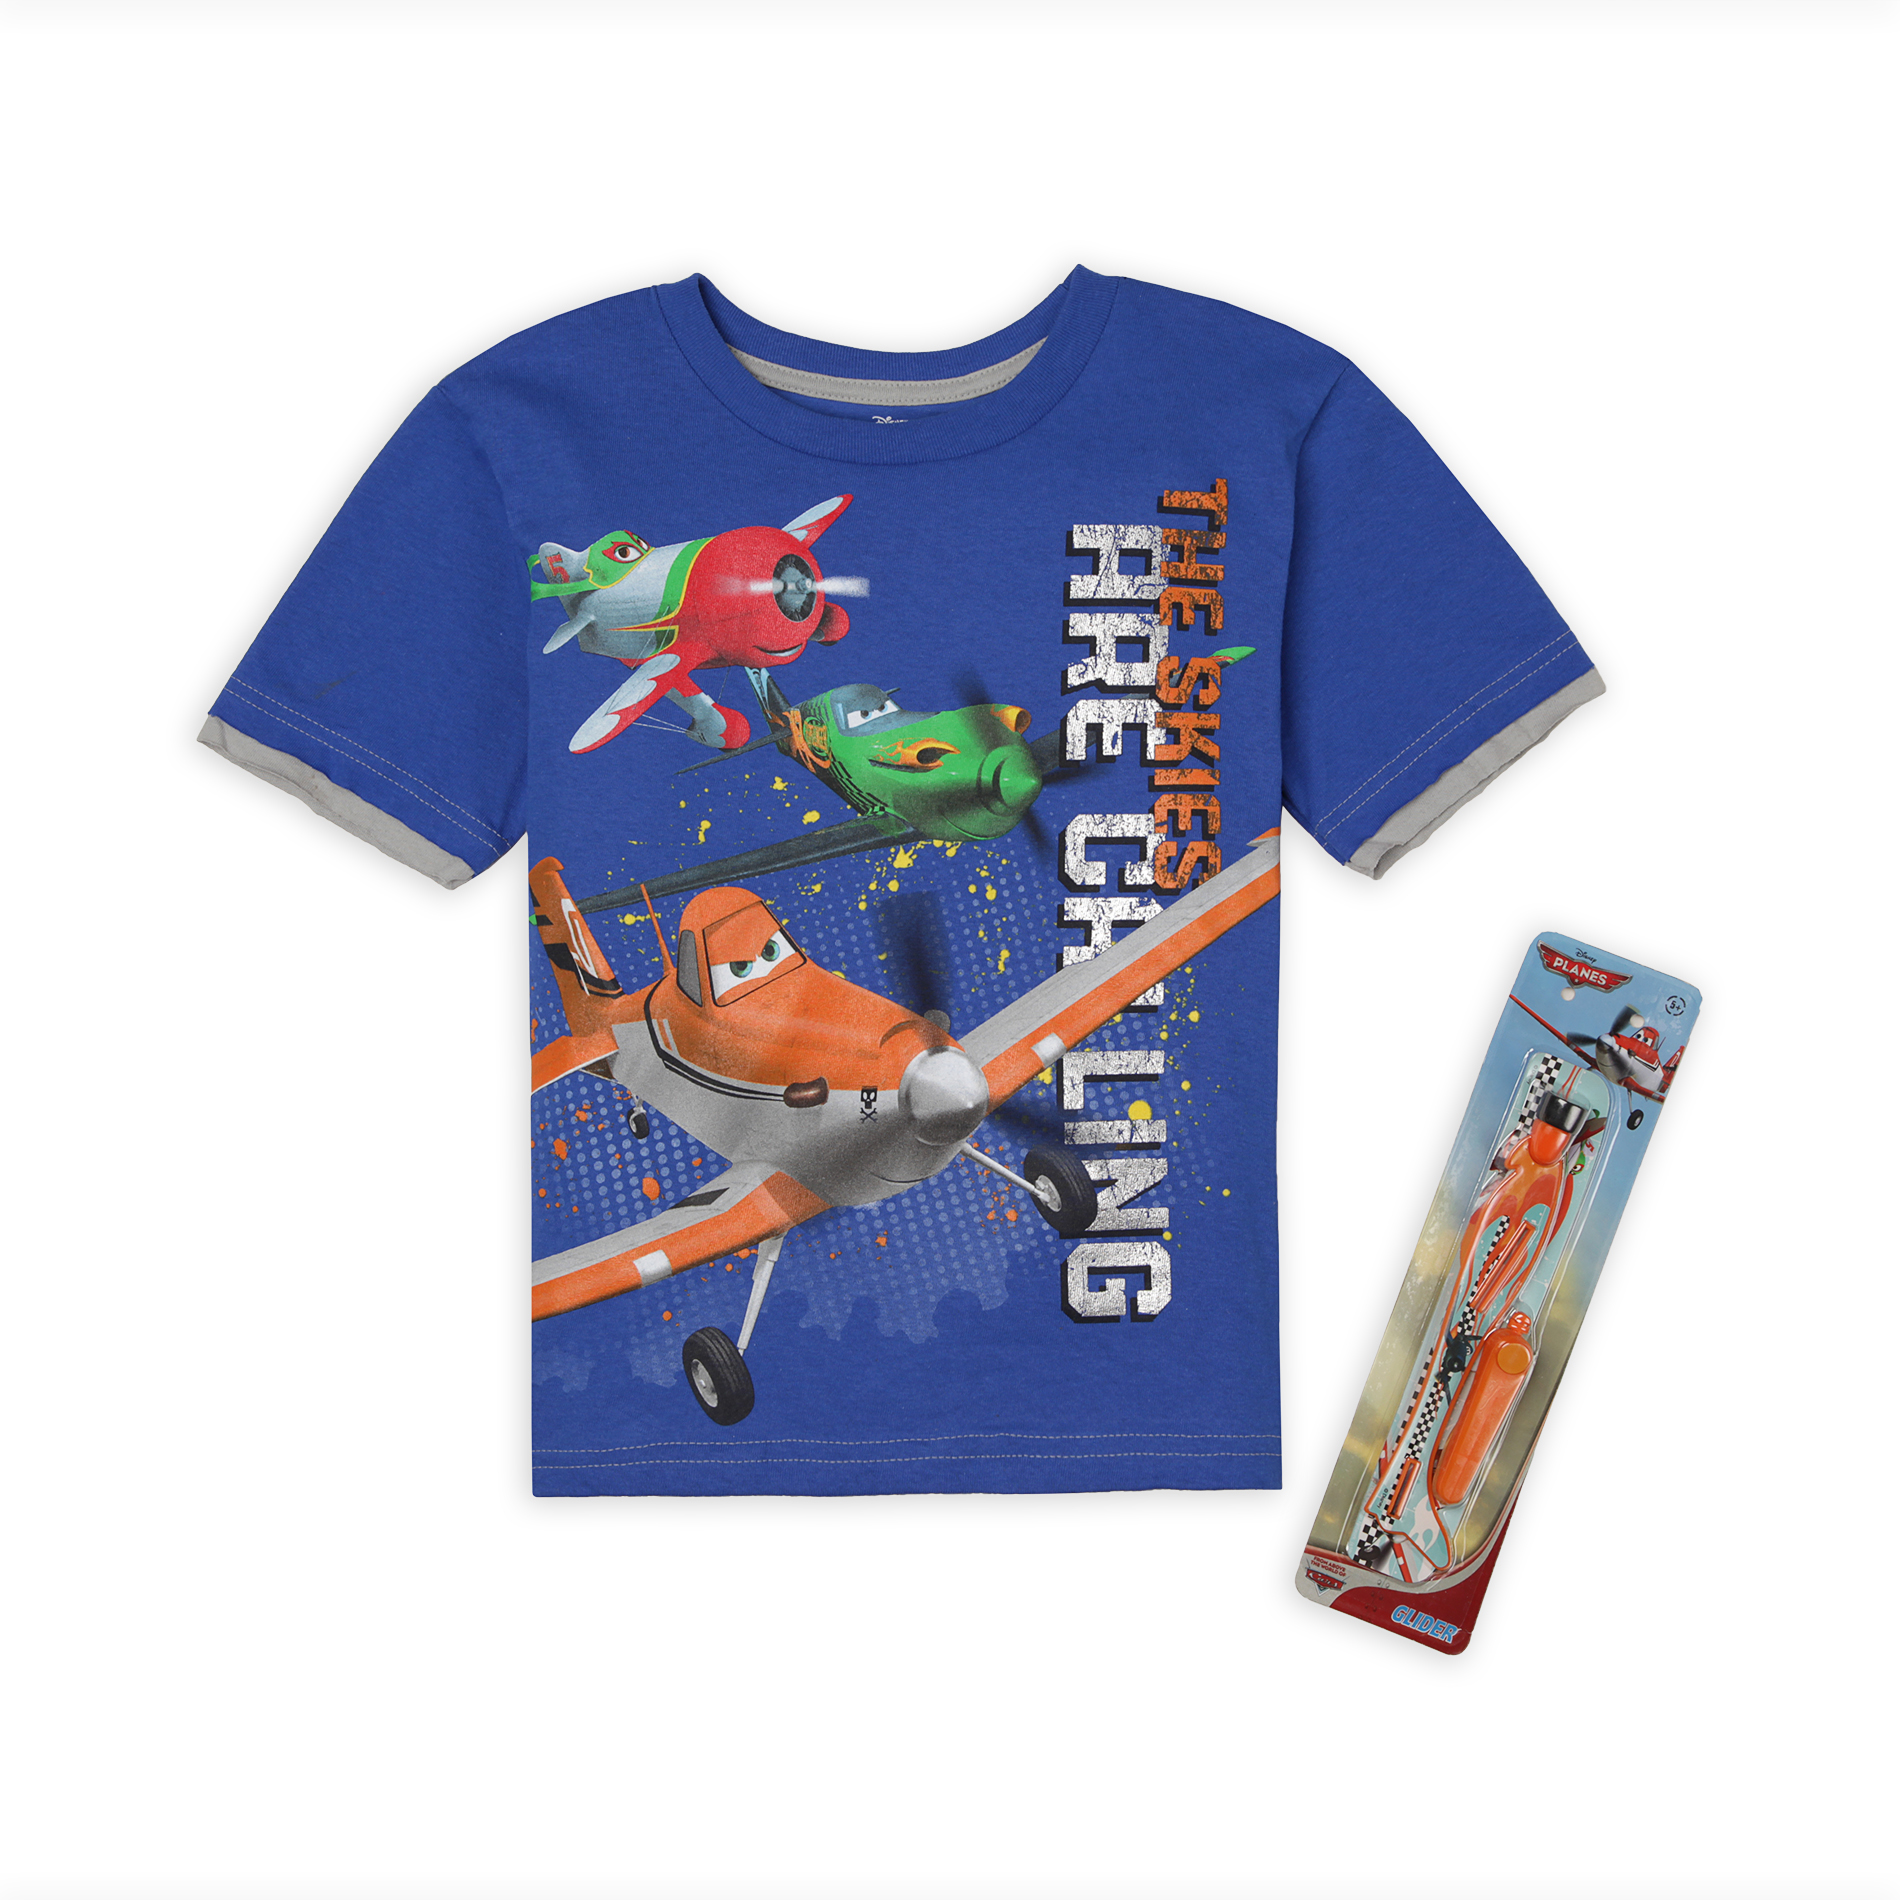 Disney Planes Boy's Graphic T-Shirt & Glider Toy